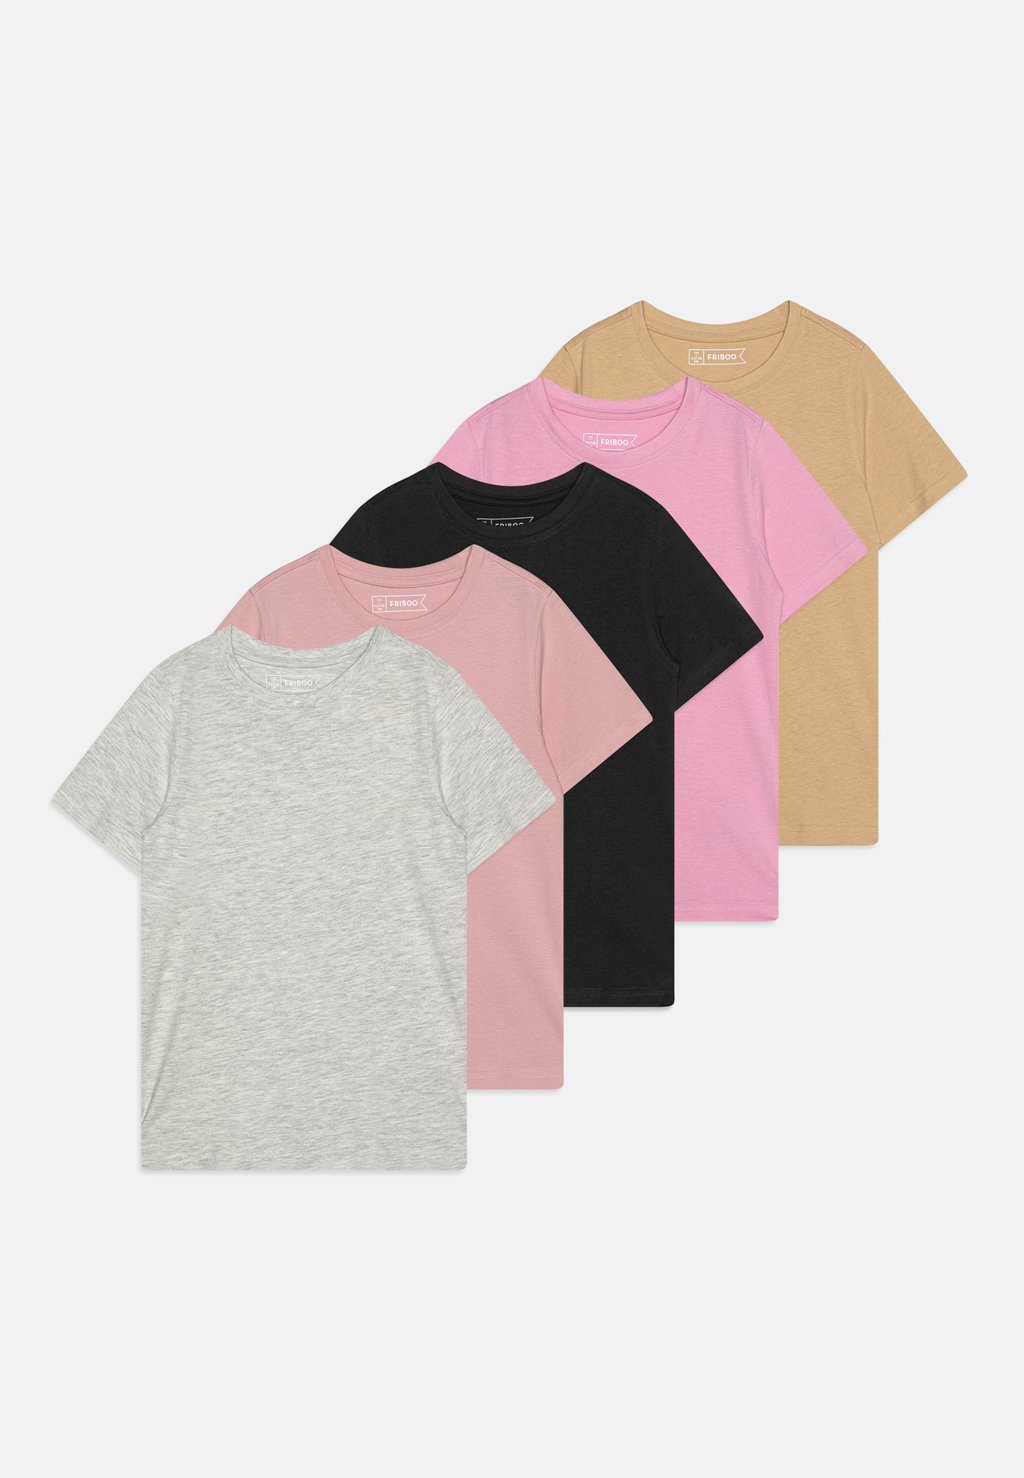 футболка с длинным рукавом 5 pack friboo цвет black red light pink футболка с принтом Unisex 5 Pack Friboo, цвет black/light pink/mottled light grey